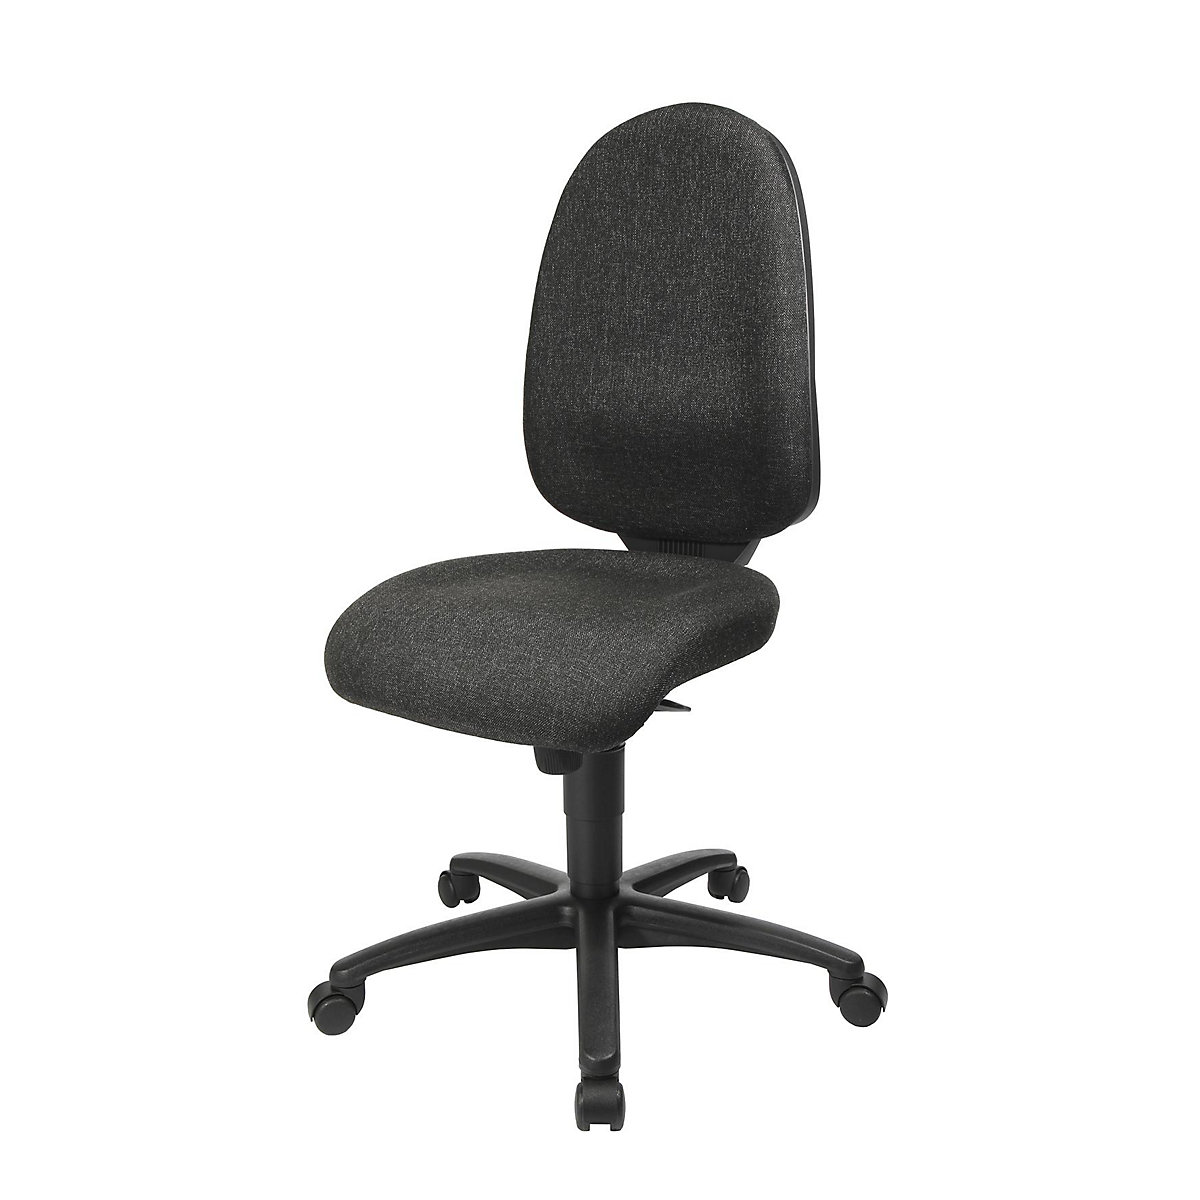 Krzesło obrotowe z podporą lędźwi, mechanizm synchroniczny, siedzisko z podporą lędźwi – Topstar, wys. oparcia 550 mm, obicie antracytowe-16